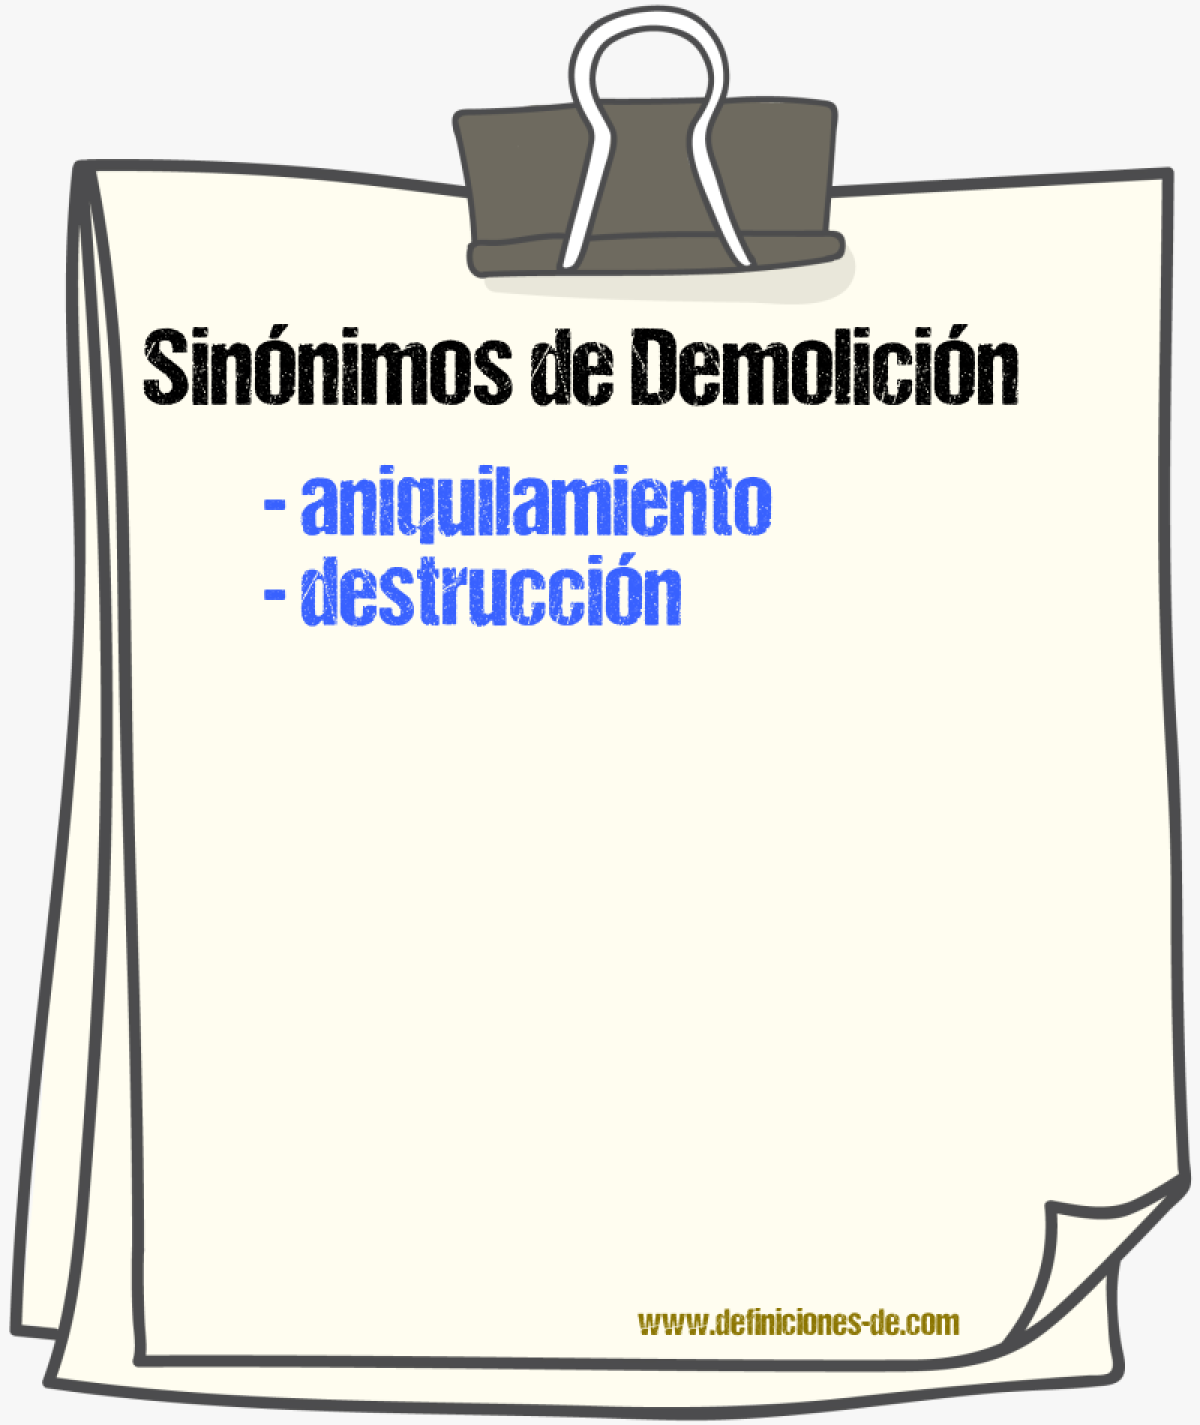 Sinónimos de demolición